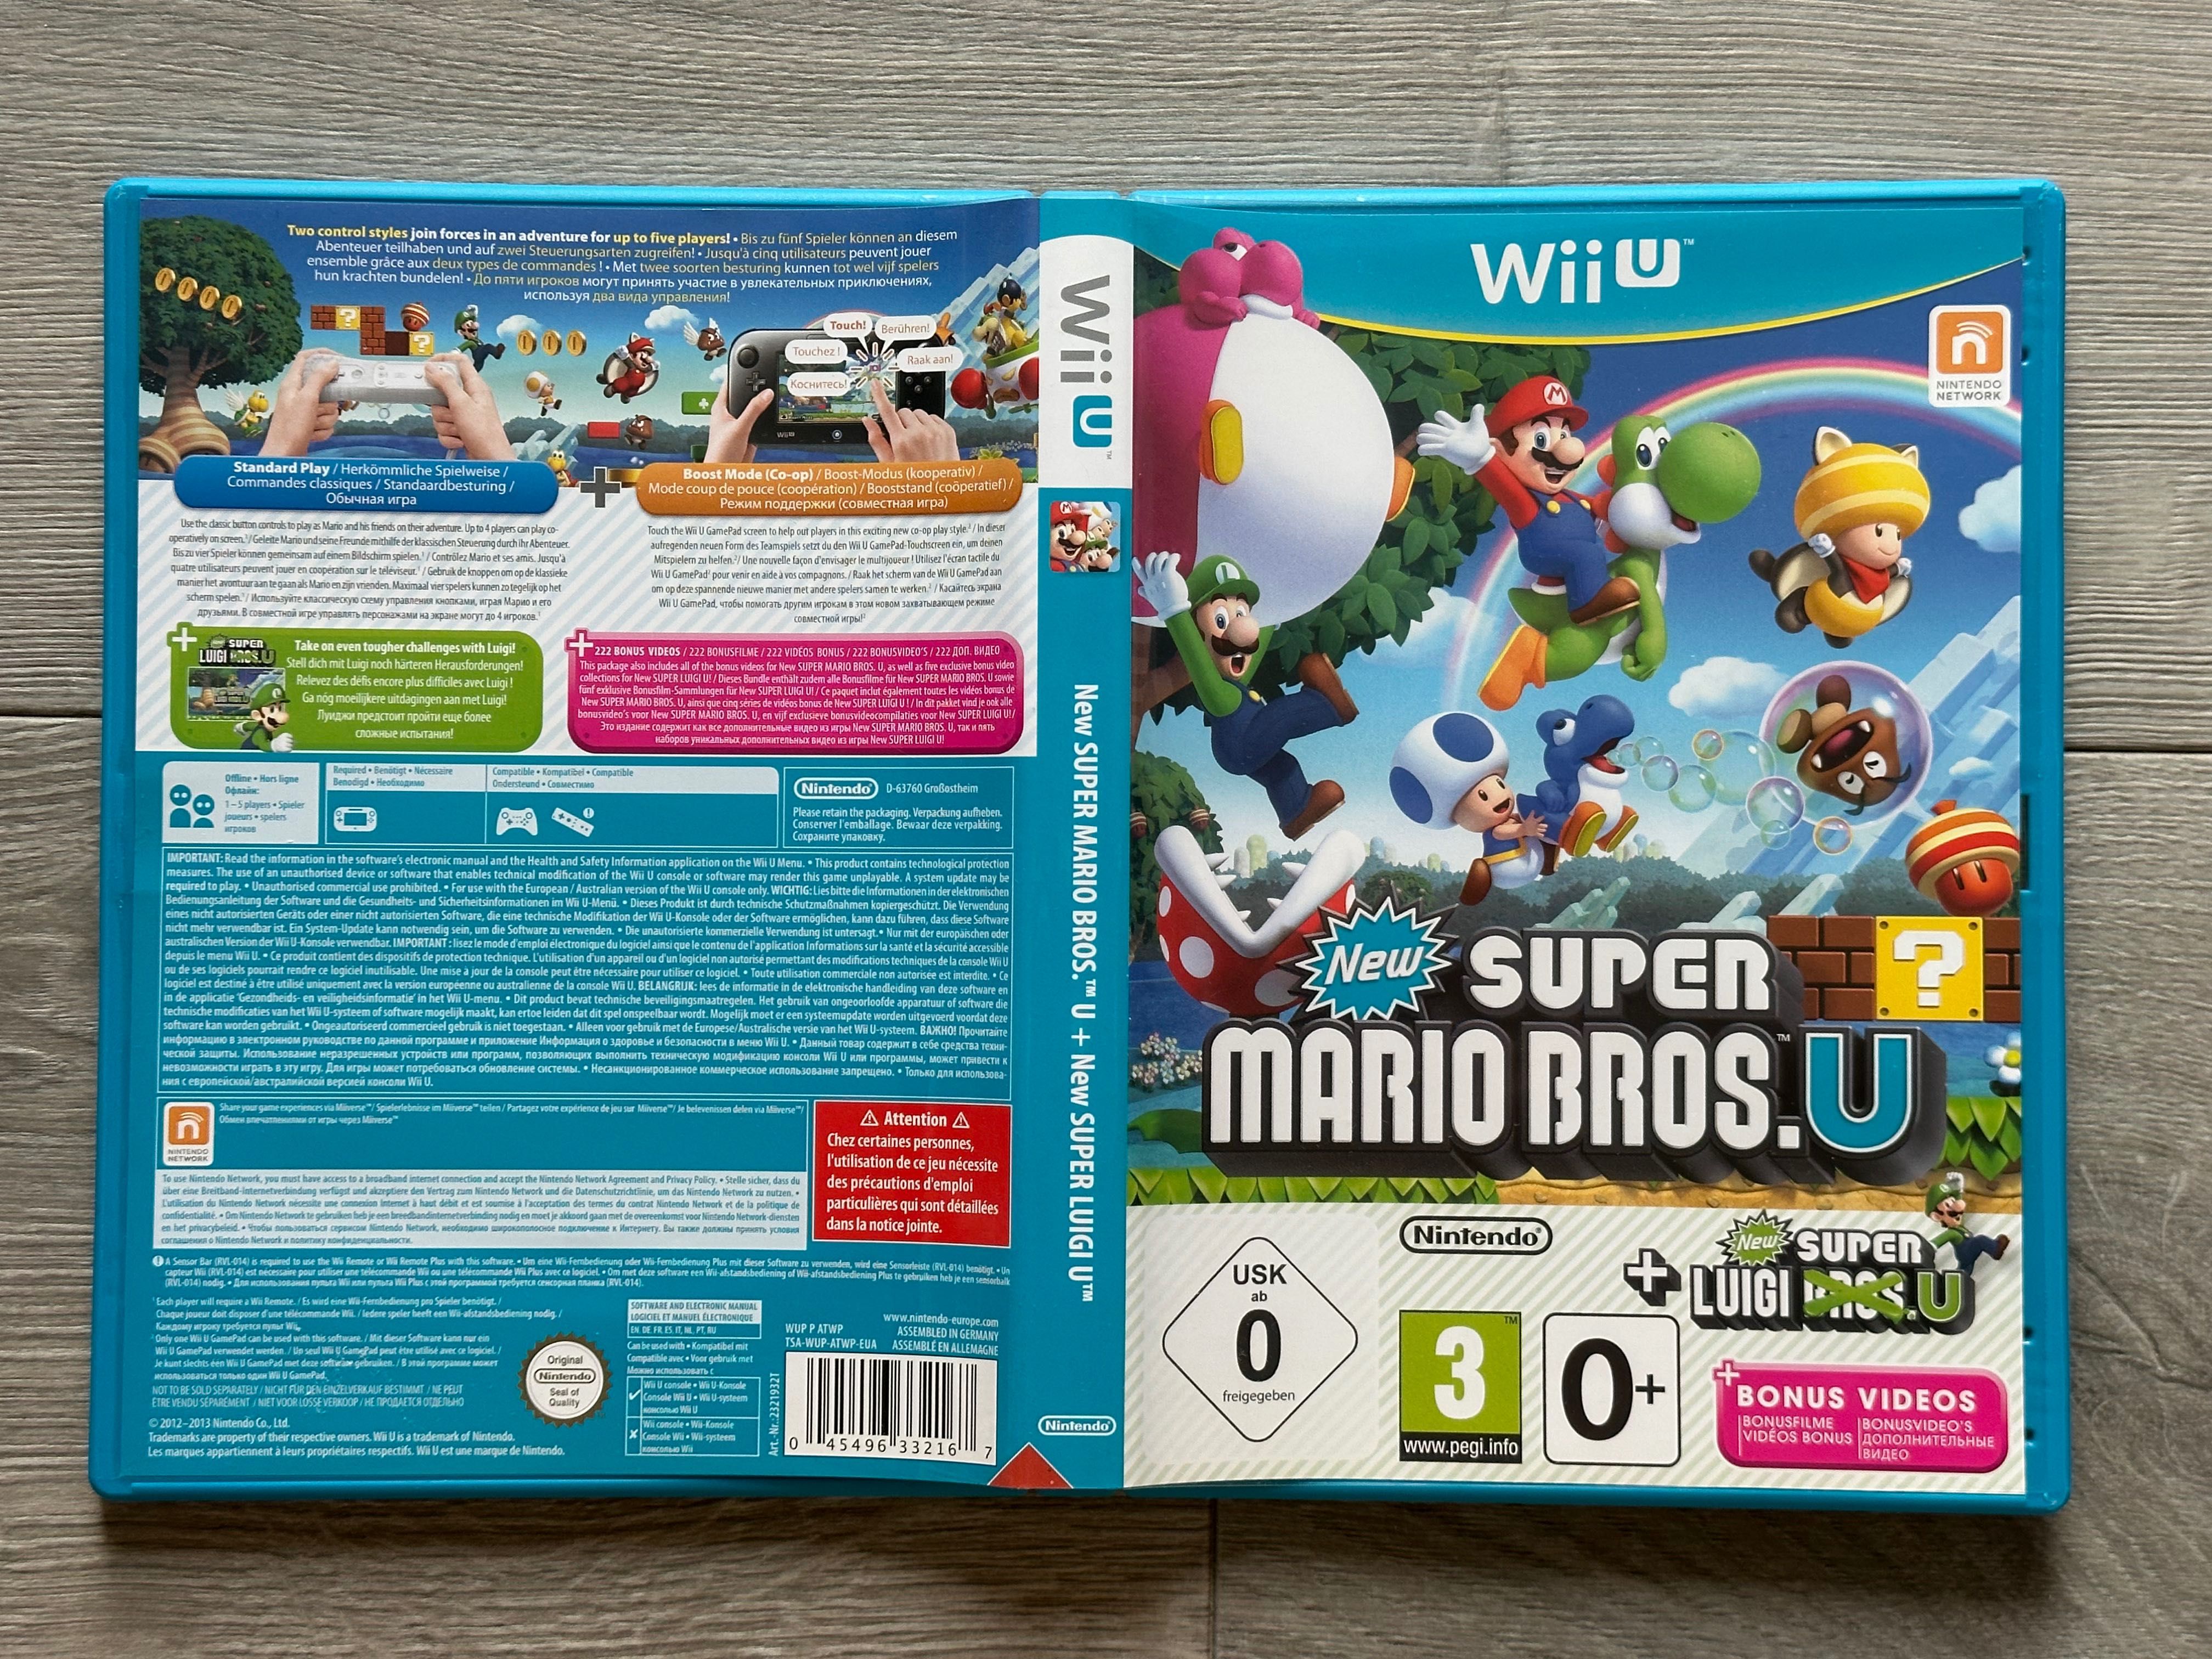 New Super Mario Bros. U + New Super Luigi U / Wii U